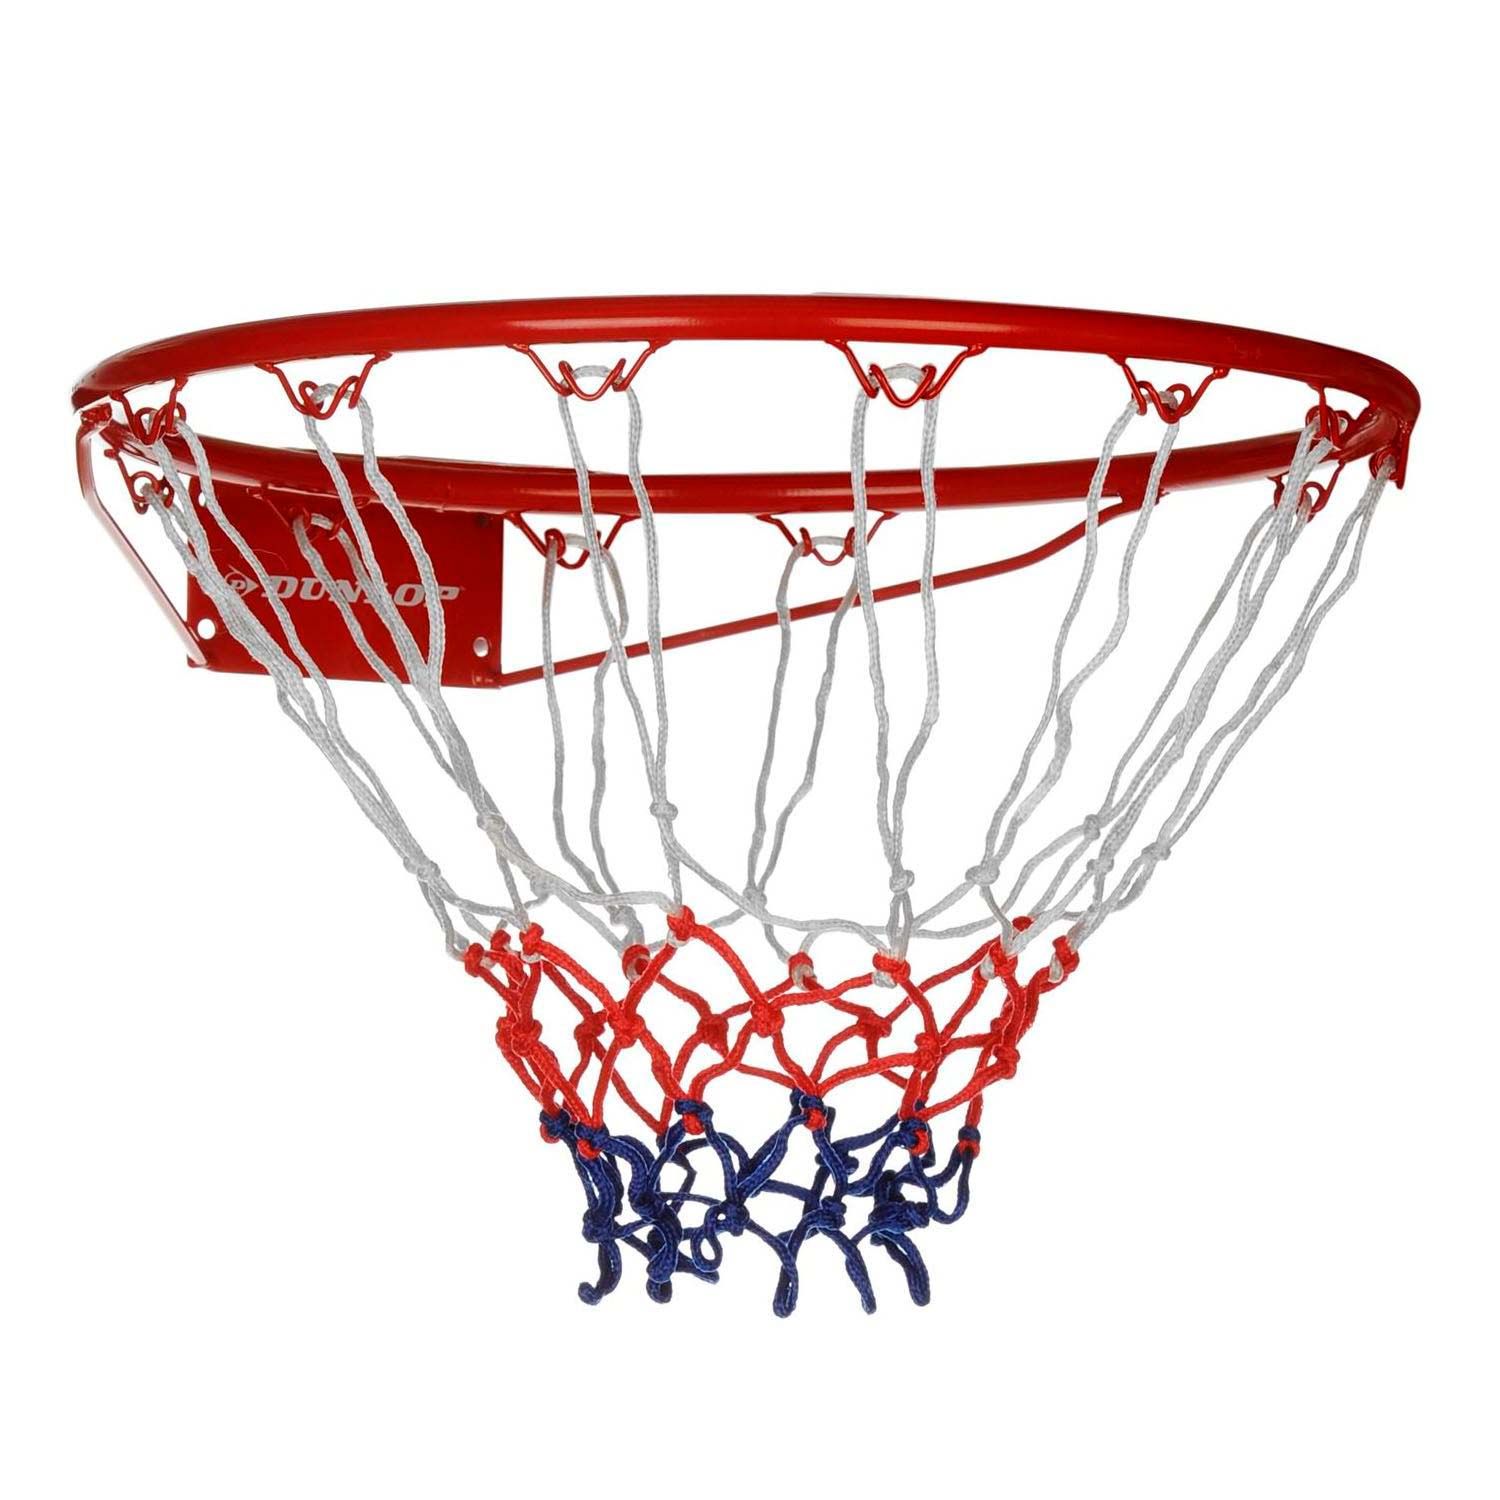 Raad eens Lelie nerveus worden Dunlop Basketbalring met Net online kopen? | Lobbes Speelgoed